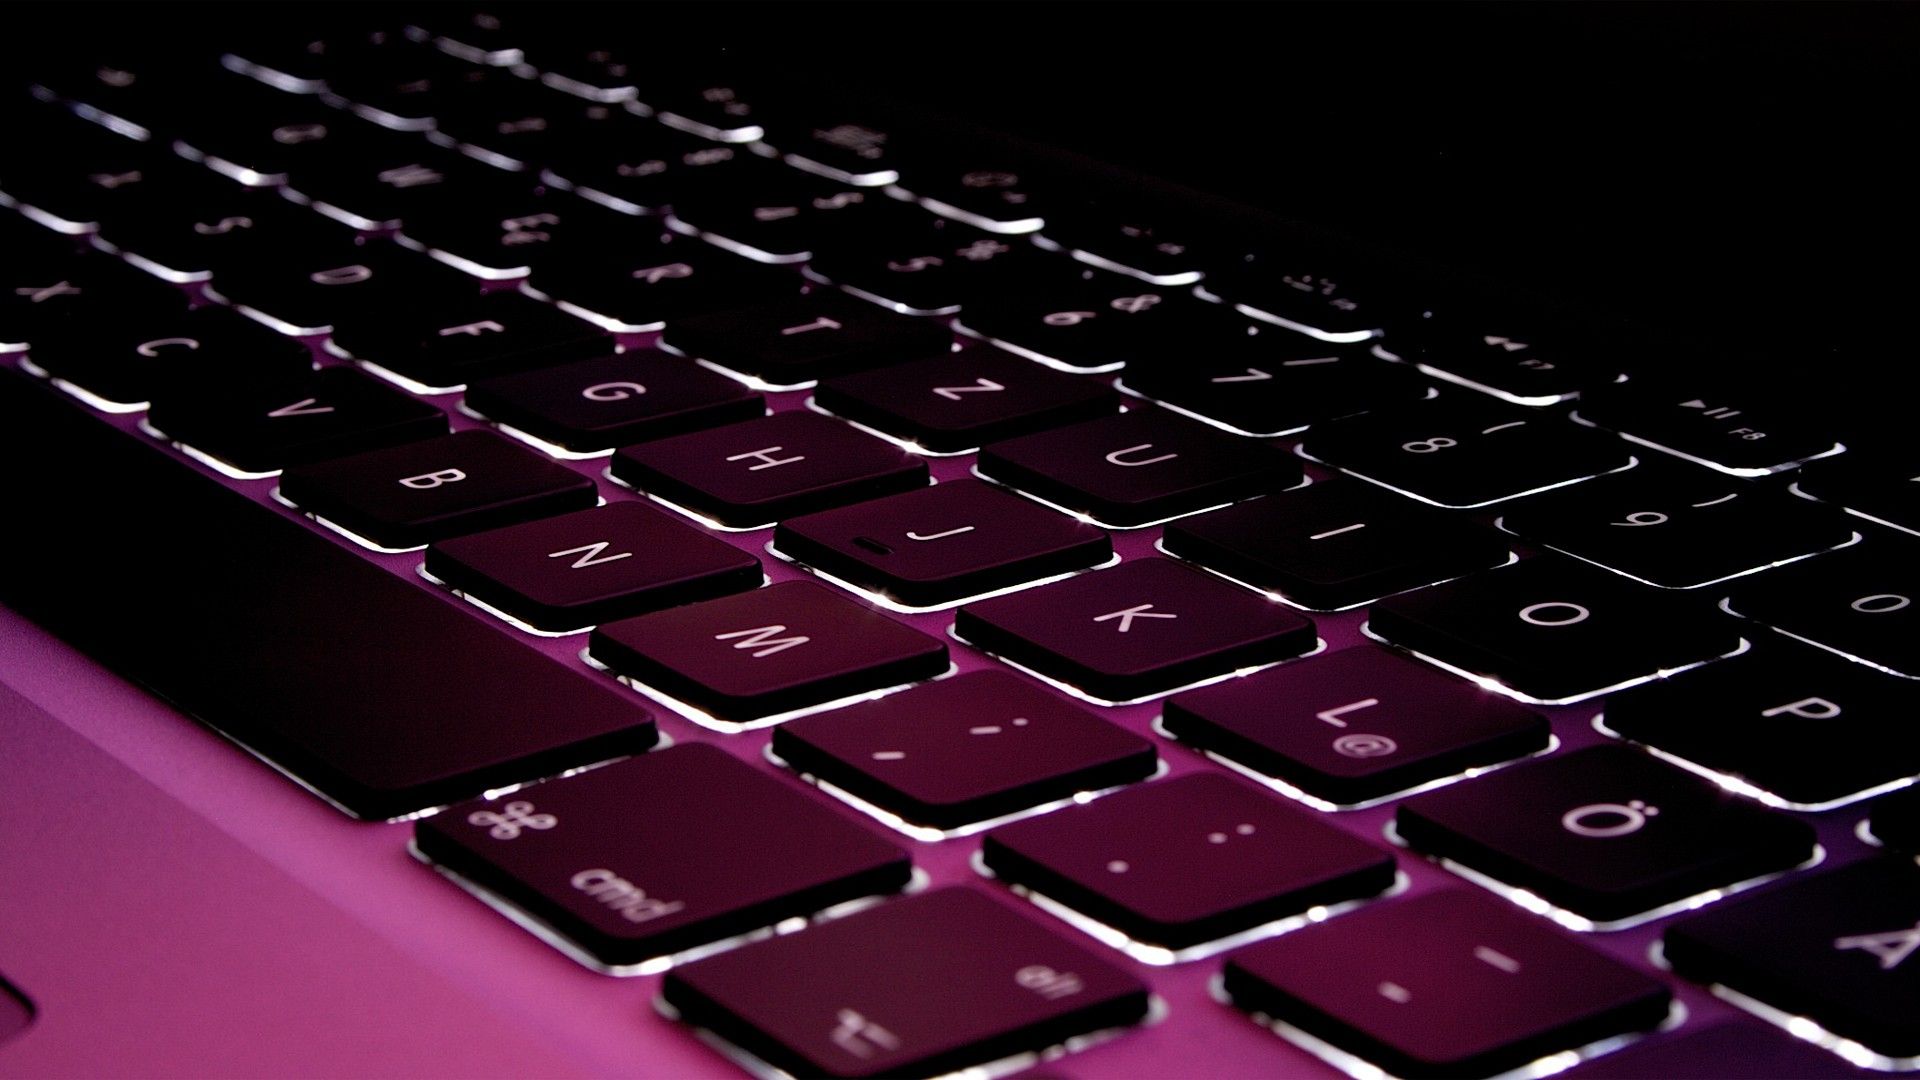 MacBook Pro purple colored keyboard HD Wallpaper FullHDWpp HD Wallpaper 1920x1080. Macbook keyboard, Keyboard, Apple keyboard